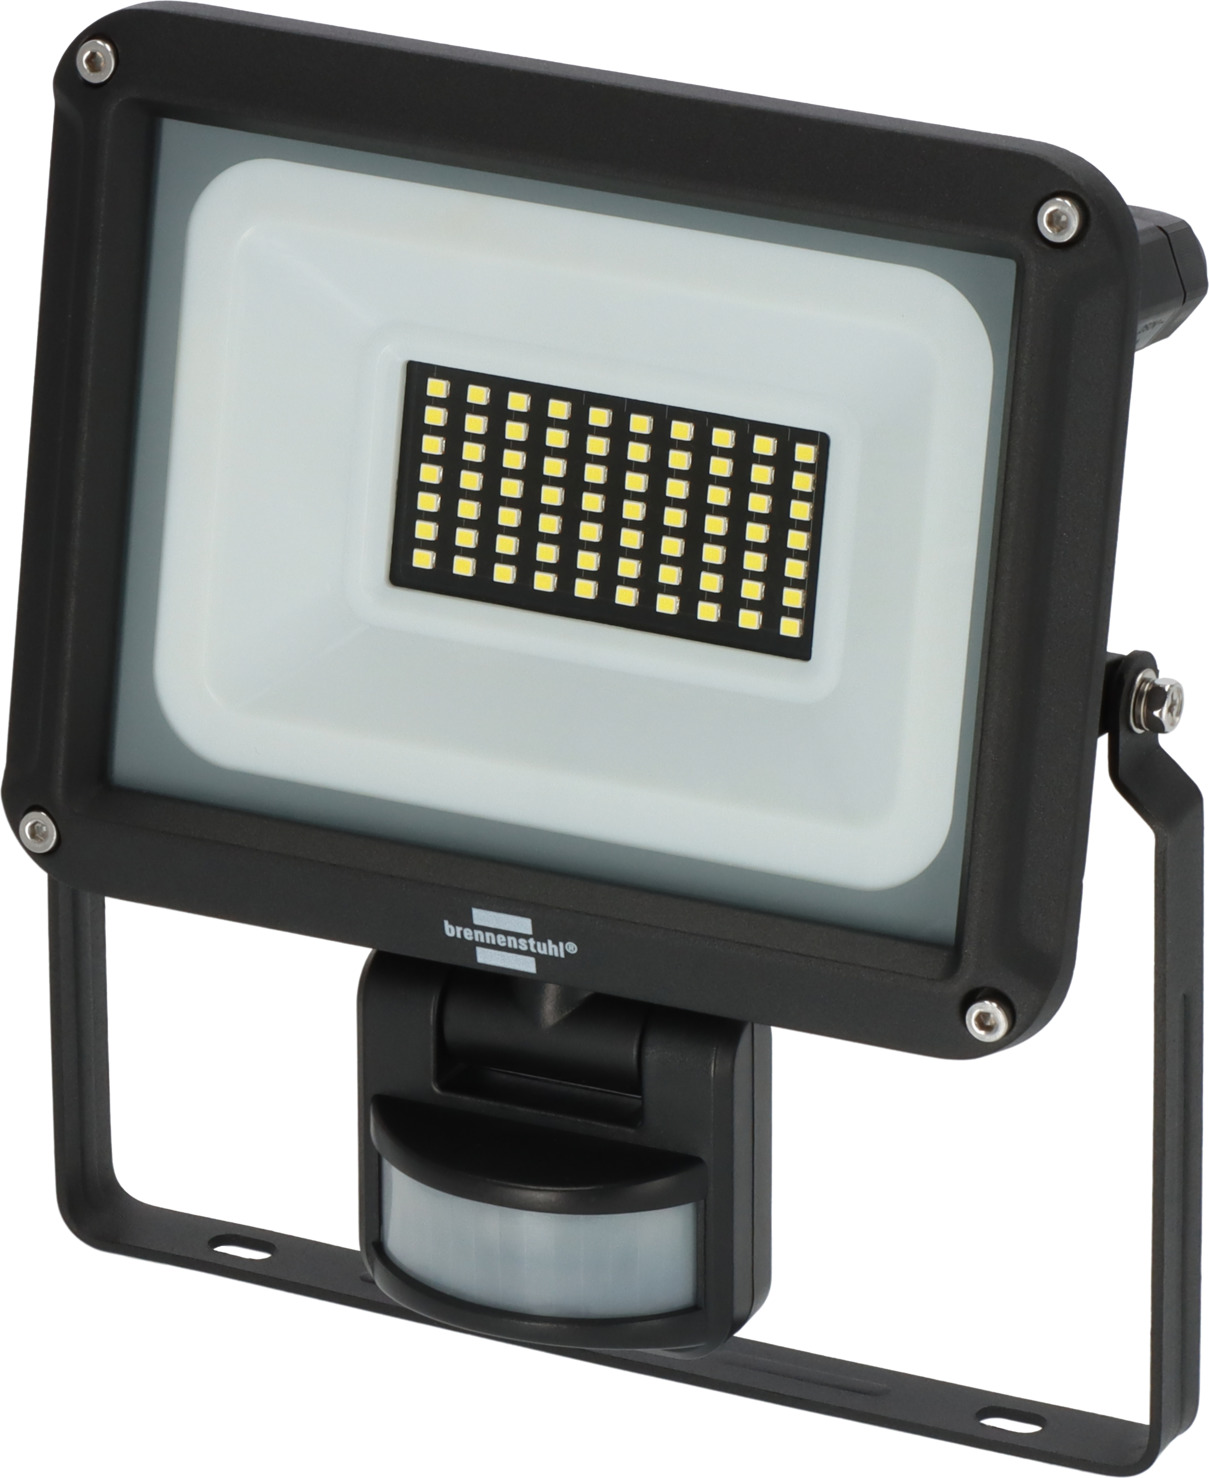 LED Strahler JARO 4060 brennenstuhl® IP65 30W, P mit Infrarot-Bewegungsmelder | 3450lm